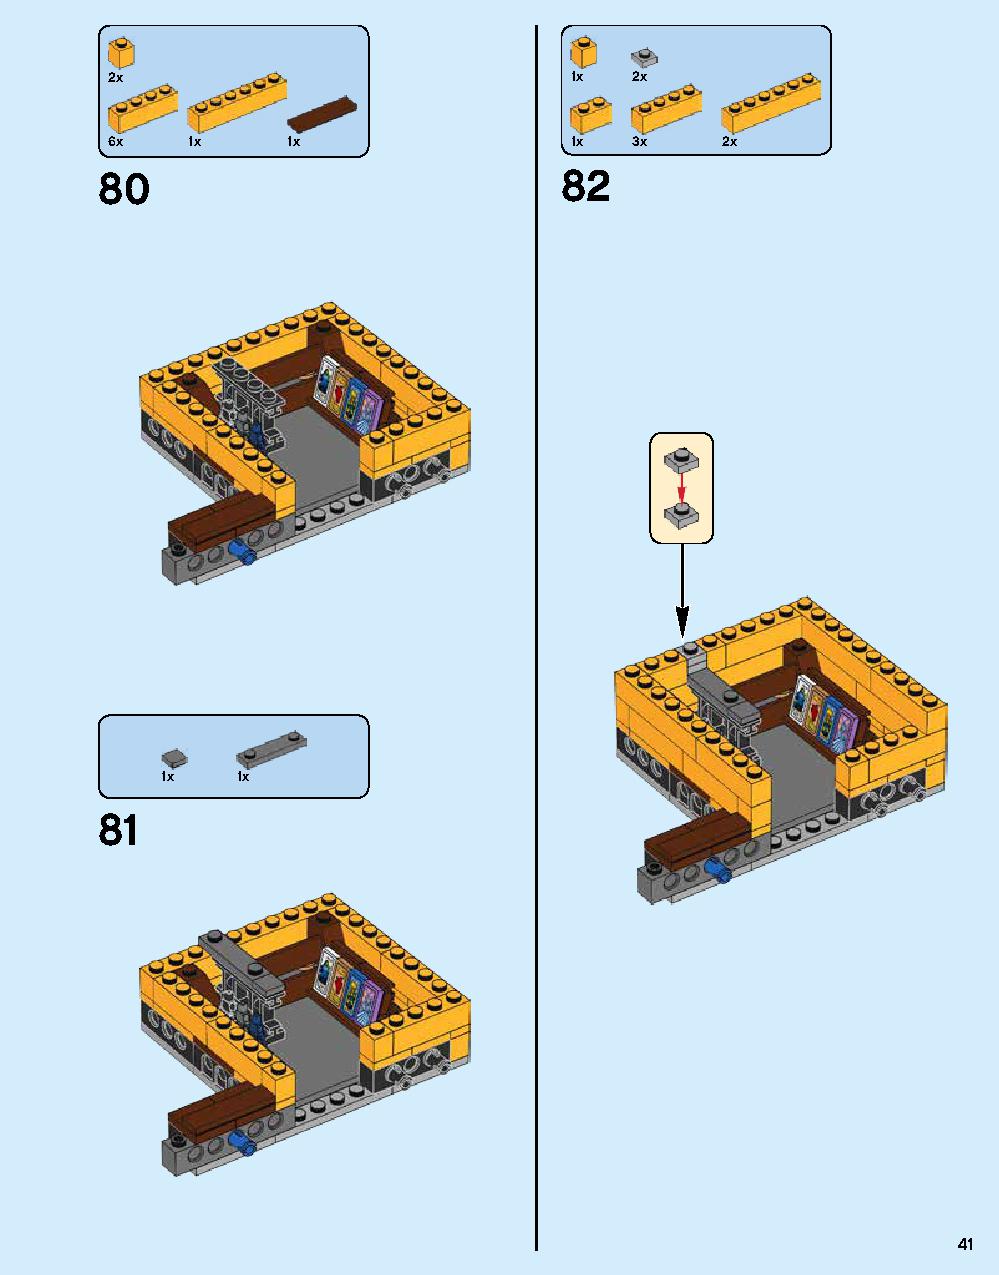 ニンジャゴー シティ 70620 レゴの商品情報 レゴの説明書・組立方法 41 page